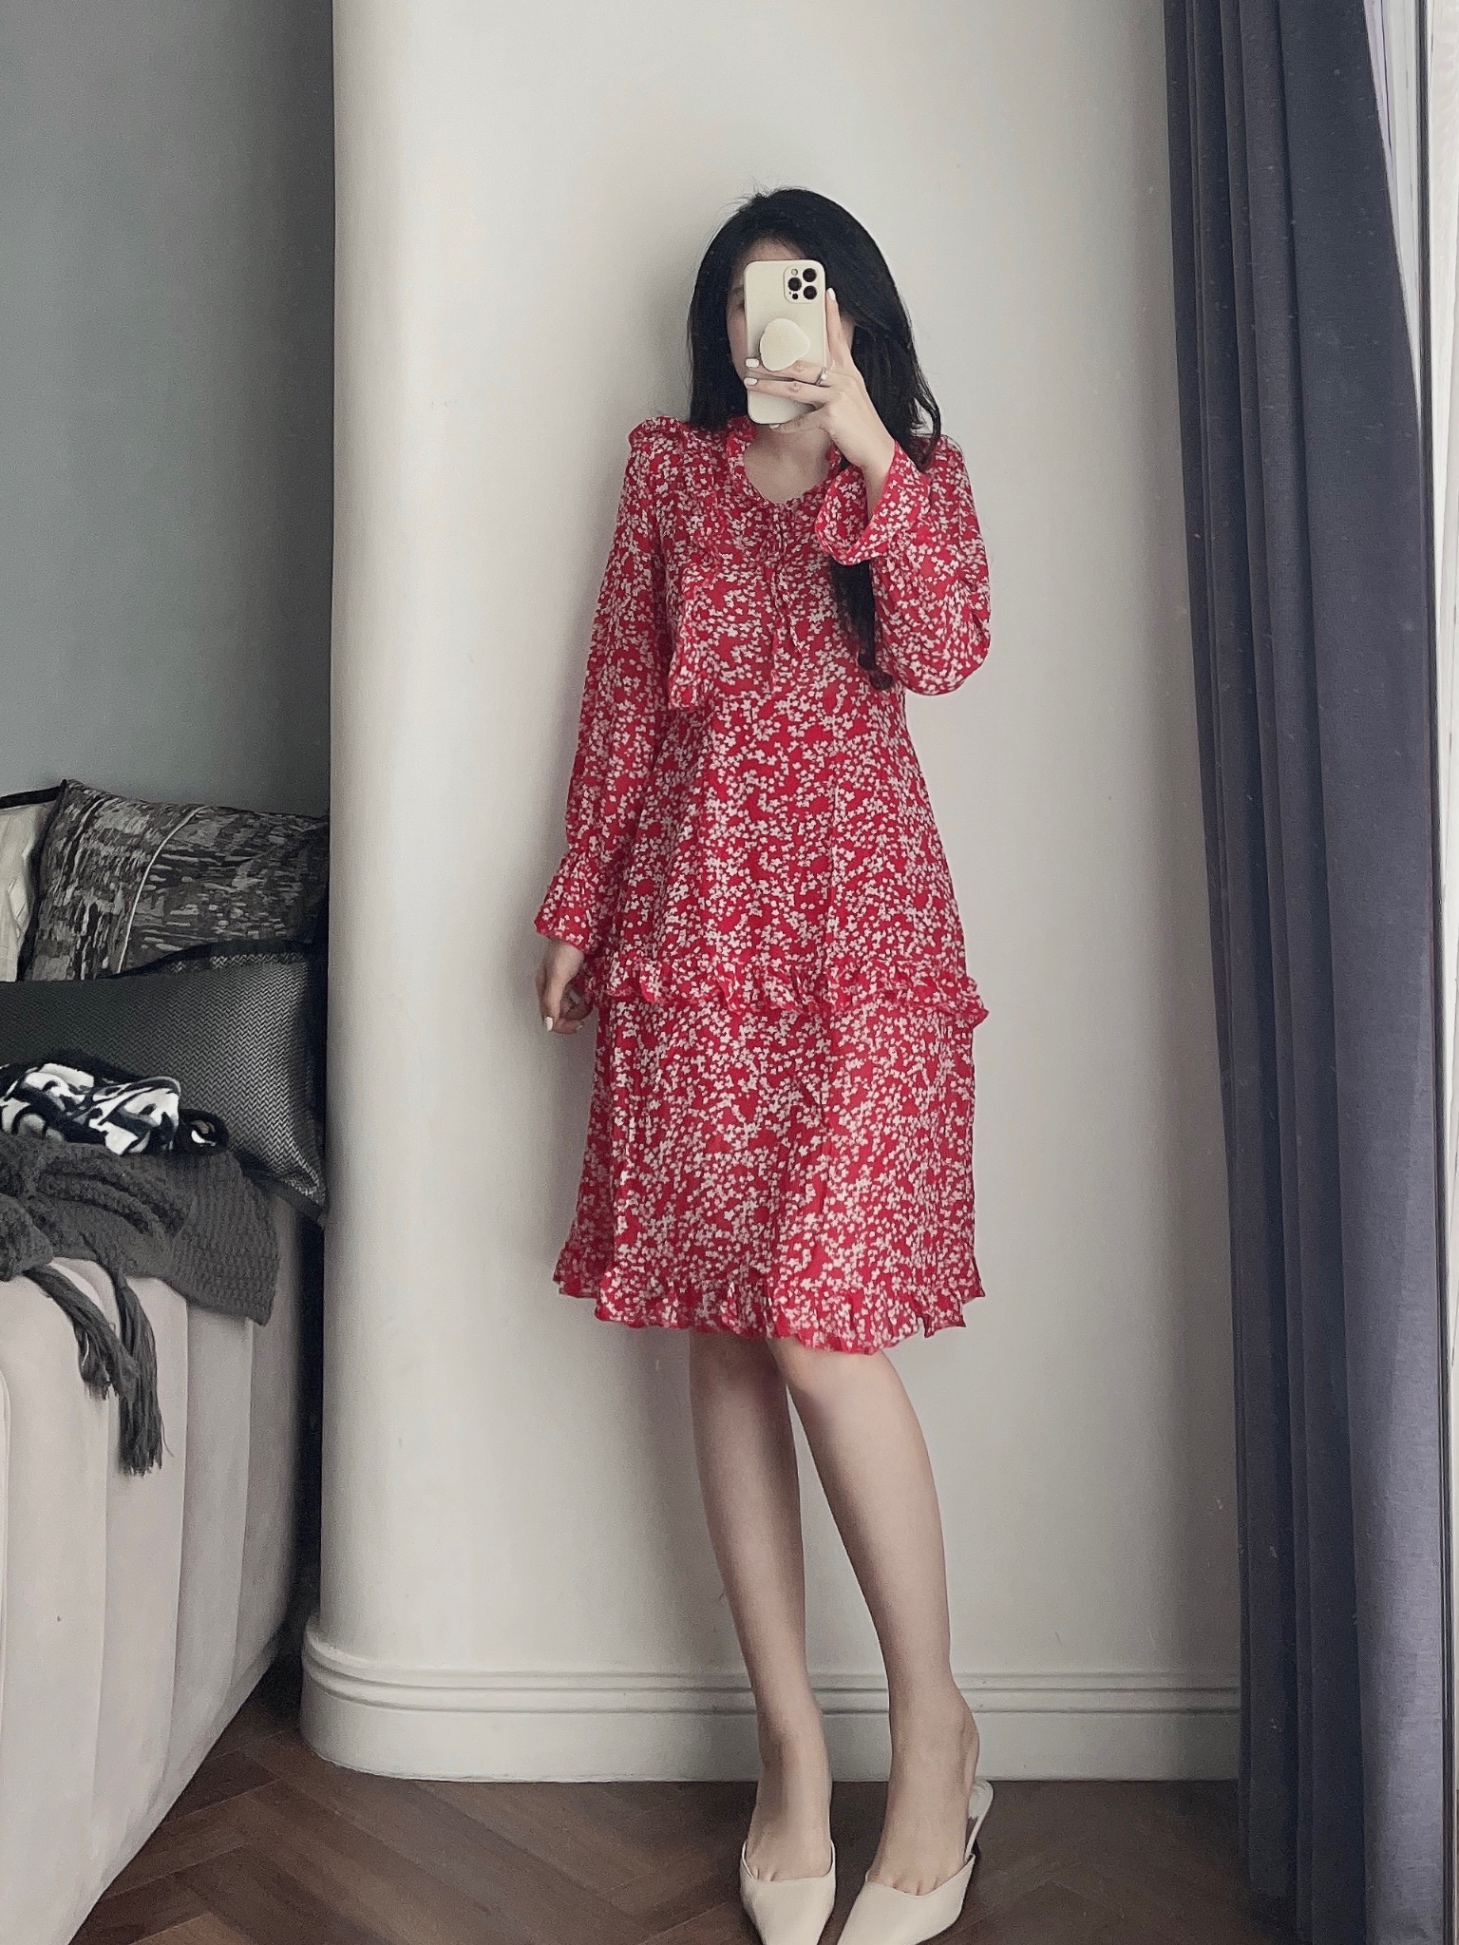 Người Phụ Nữ Váy Đỏ Người Mẫu Thời Trang Trong Áo Choàng Dài Quay Hình ảnh  Sẵn có - Tải xuống Hình ảnh Ngay bây giờ - iStock